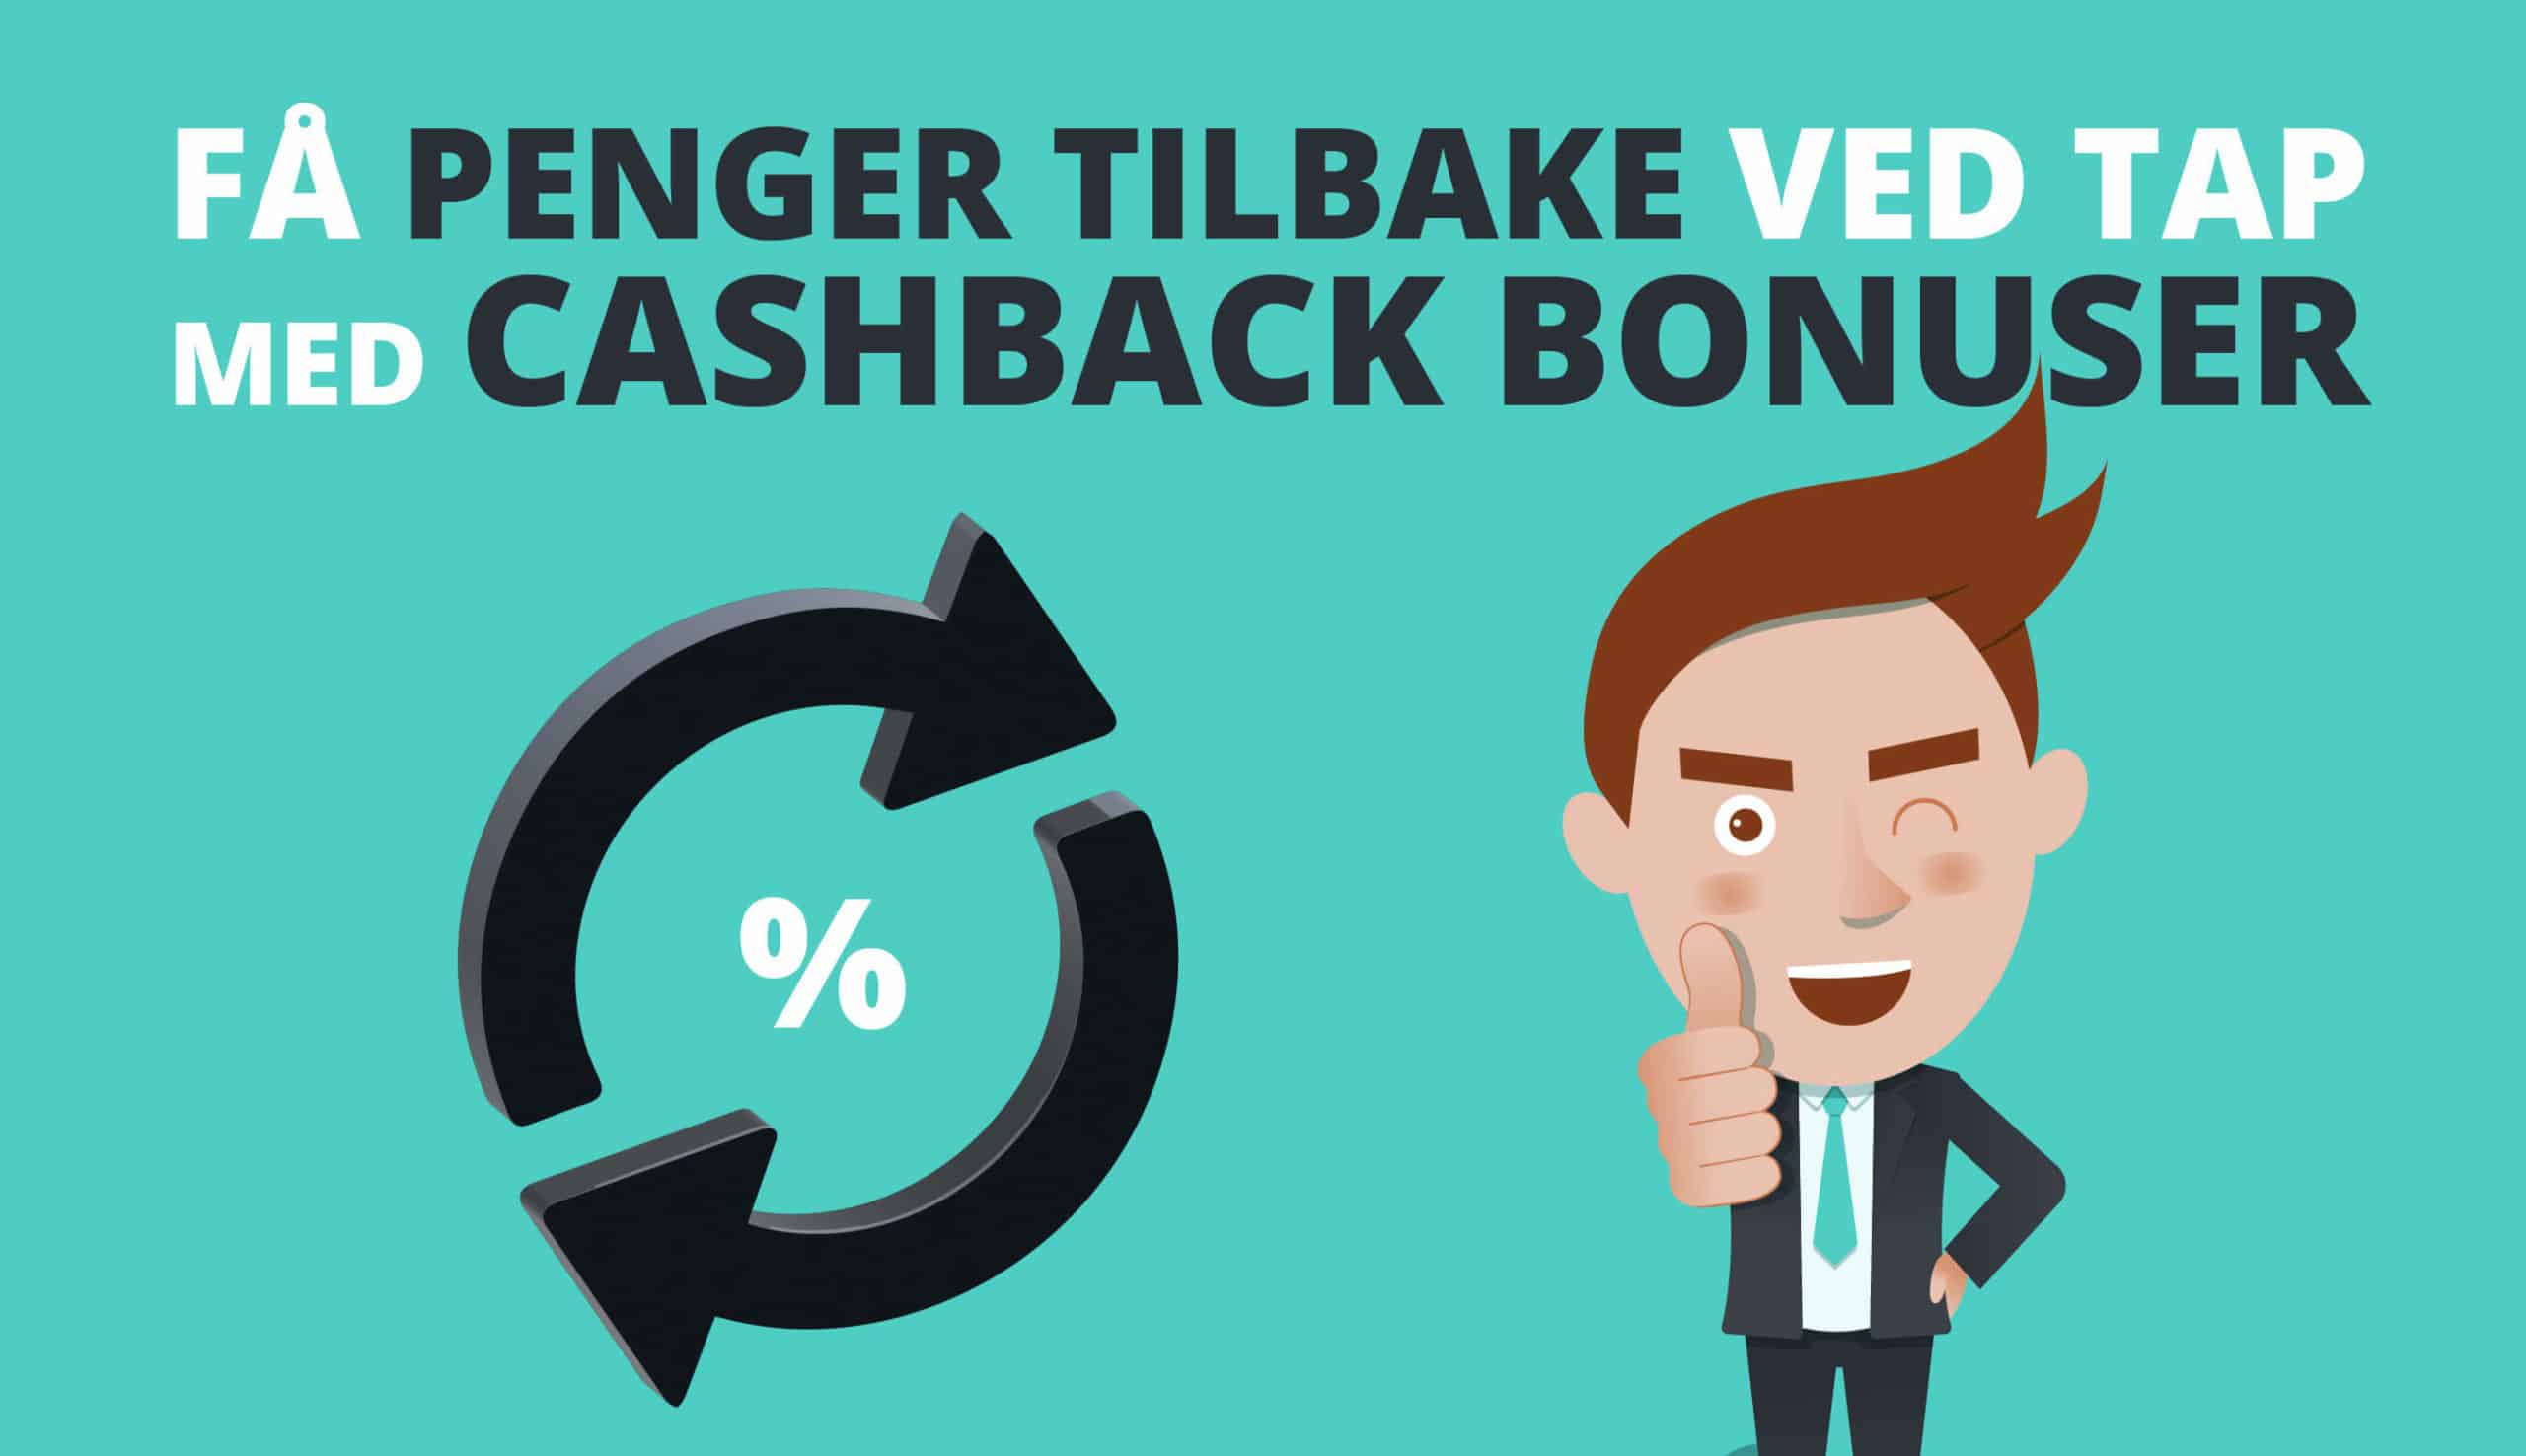 cashback bonus er penger tilbake ved tap